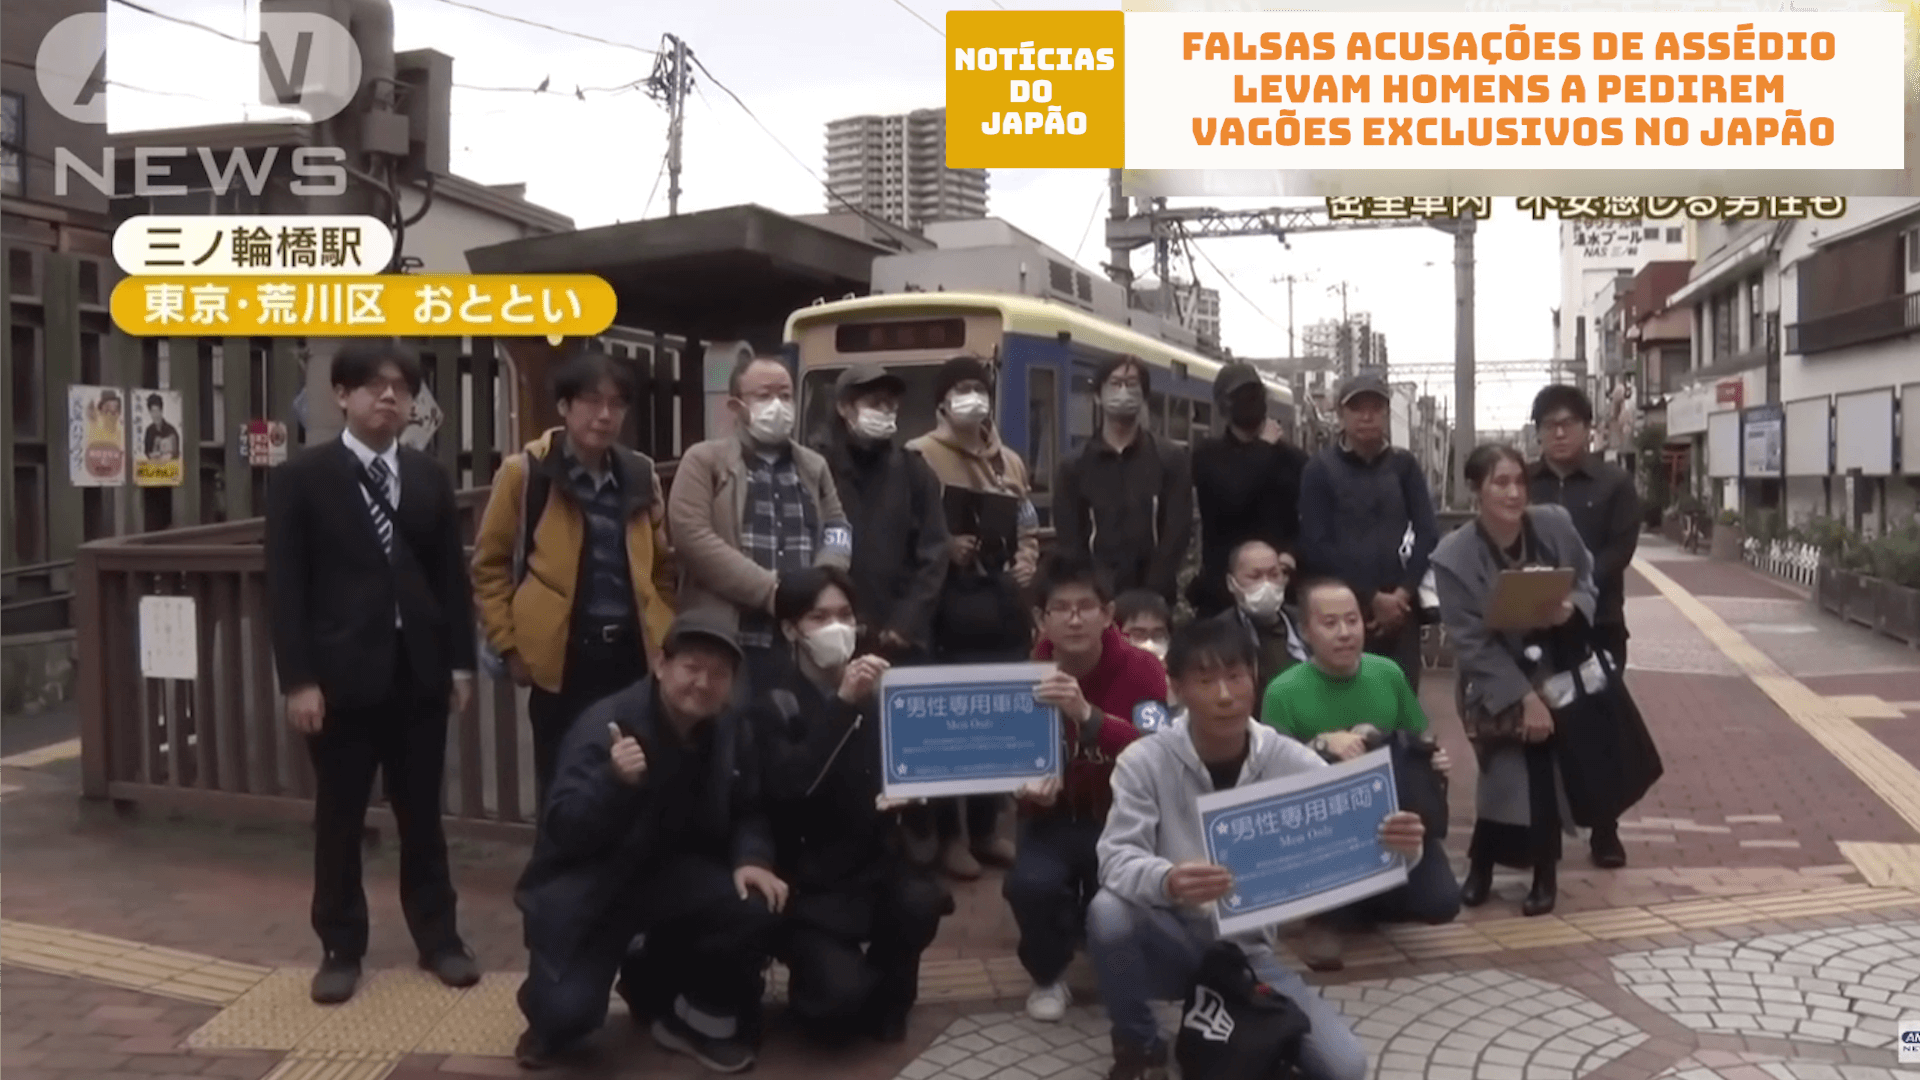 Falsas acusações de assédio levam homens a pedirem vagões exclusivos no Japão